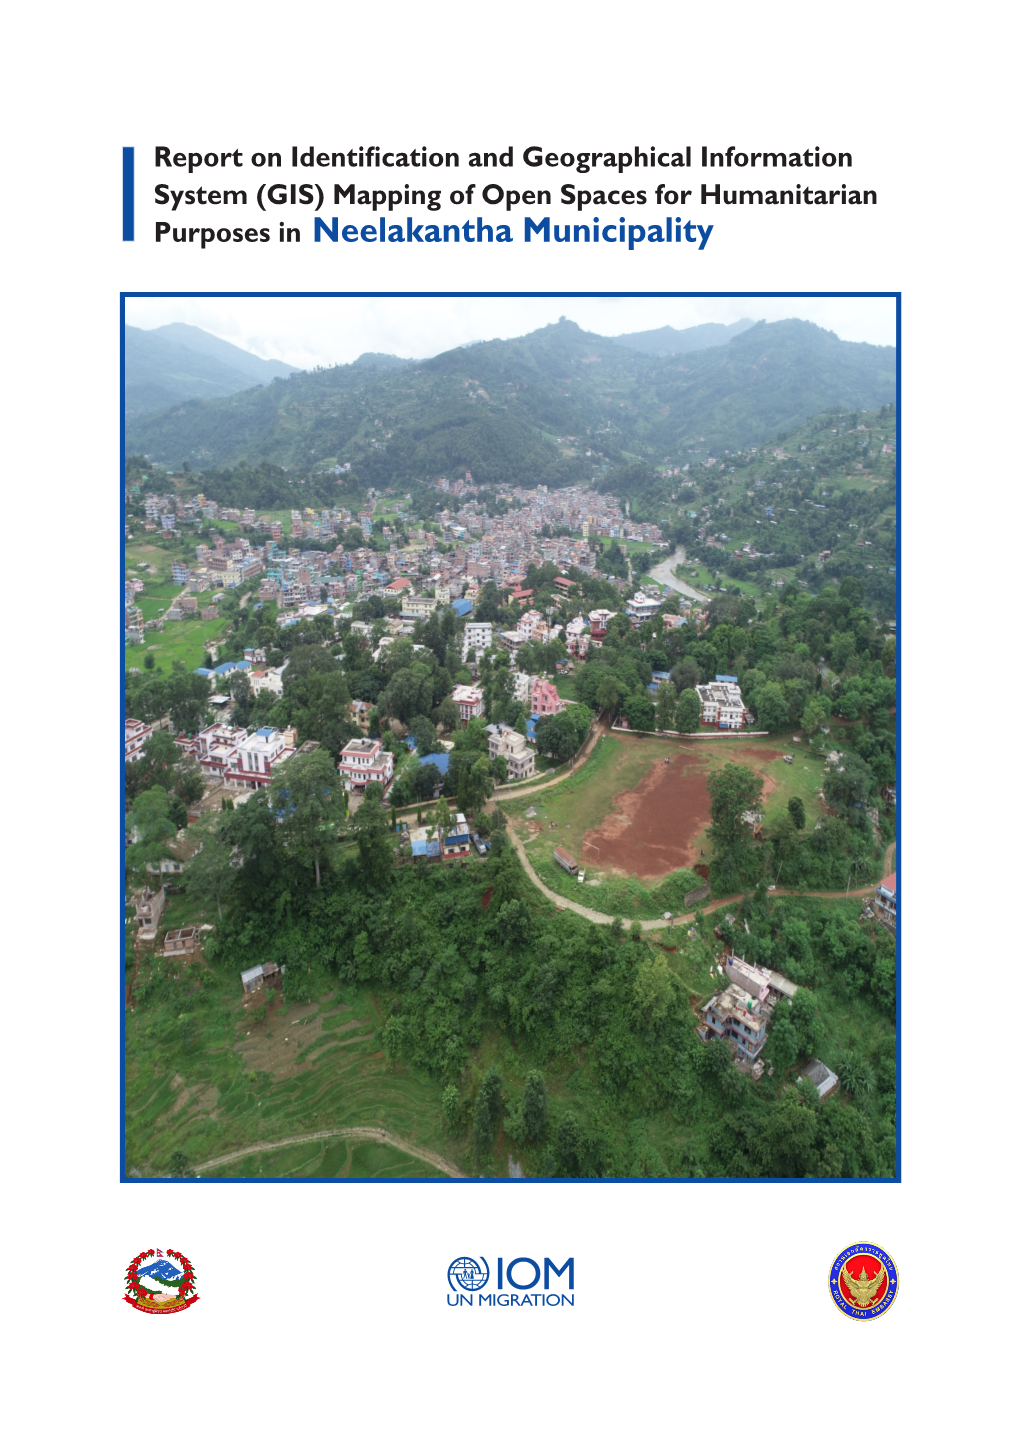 Purposes in Neelakantha Municipality